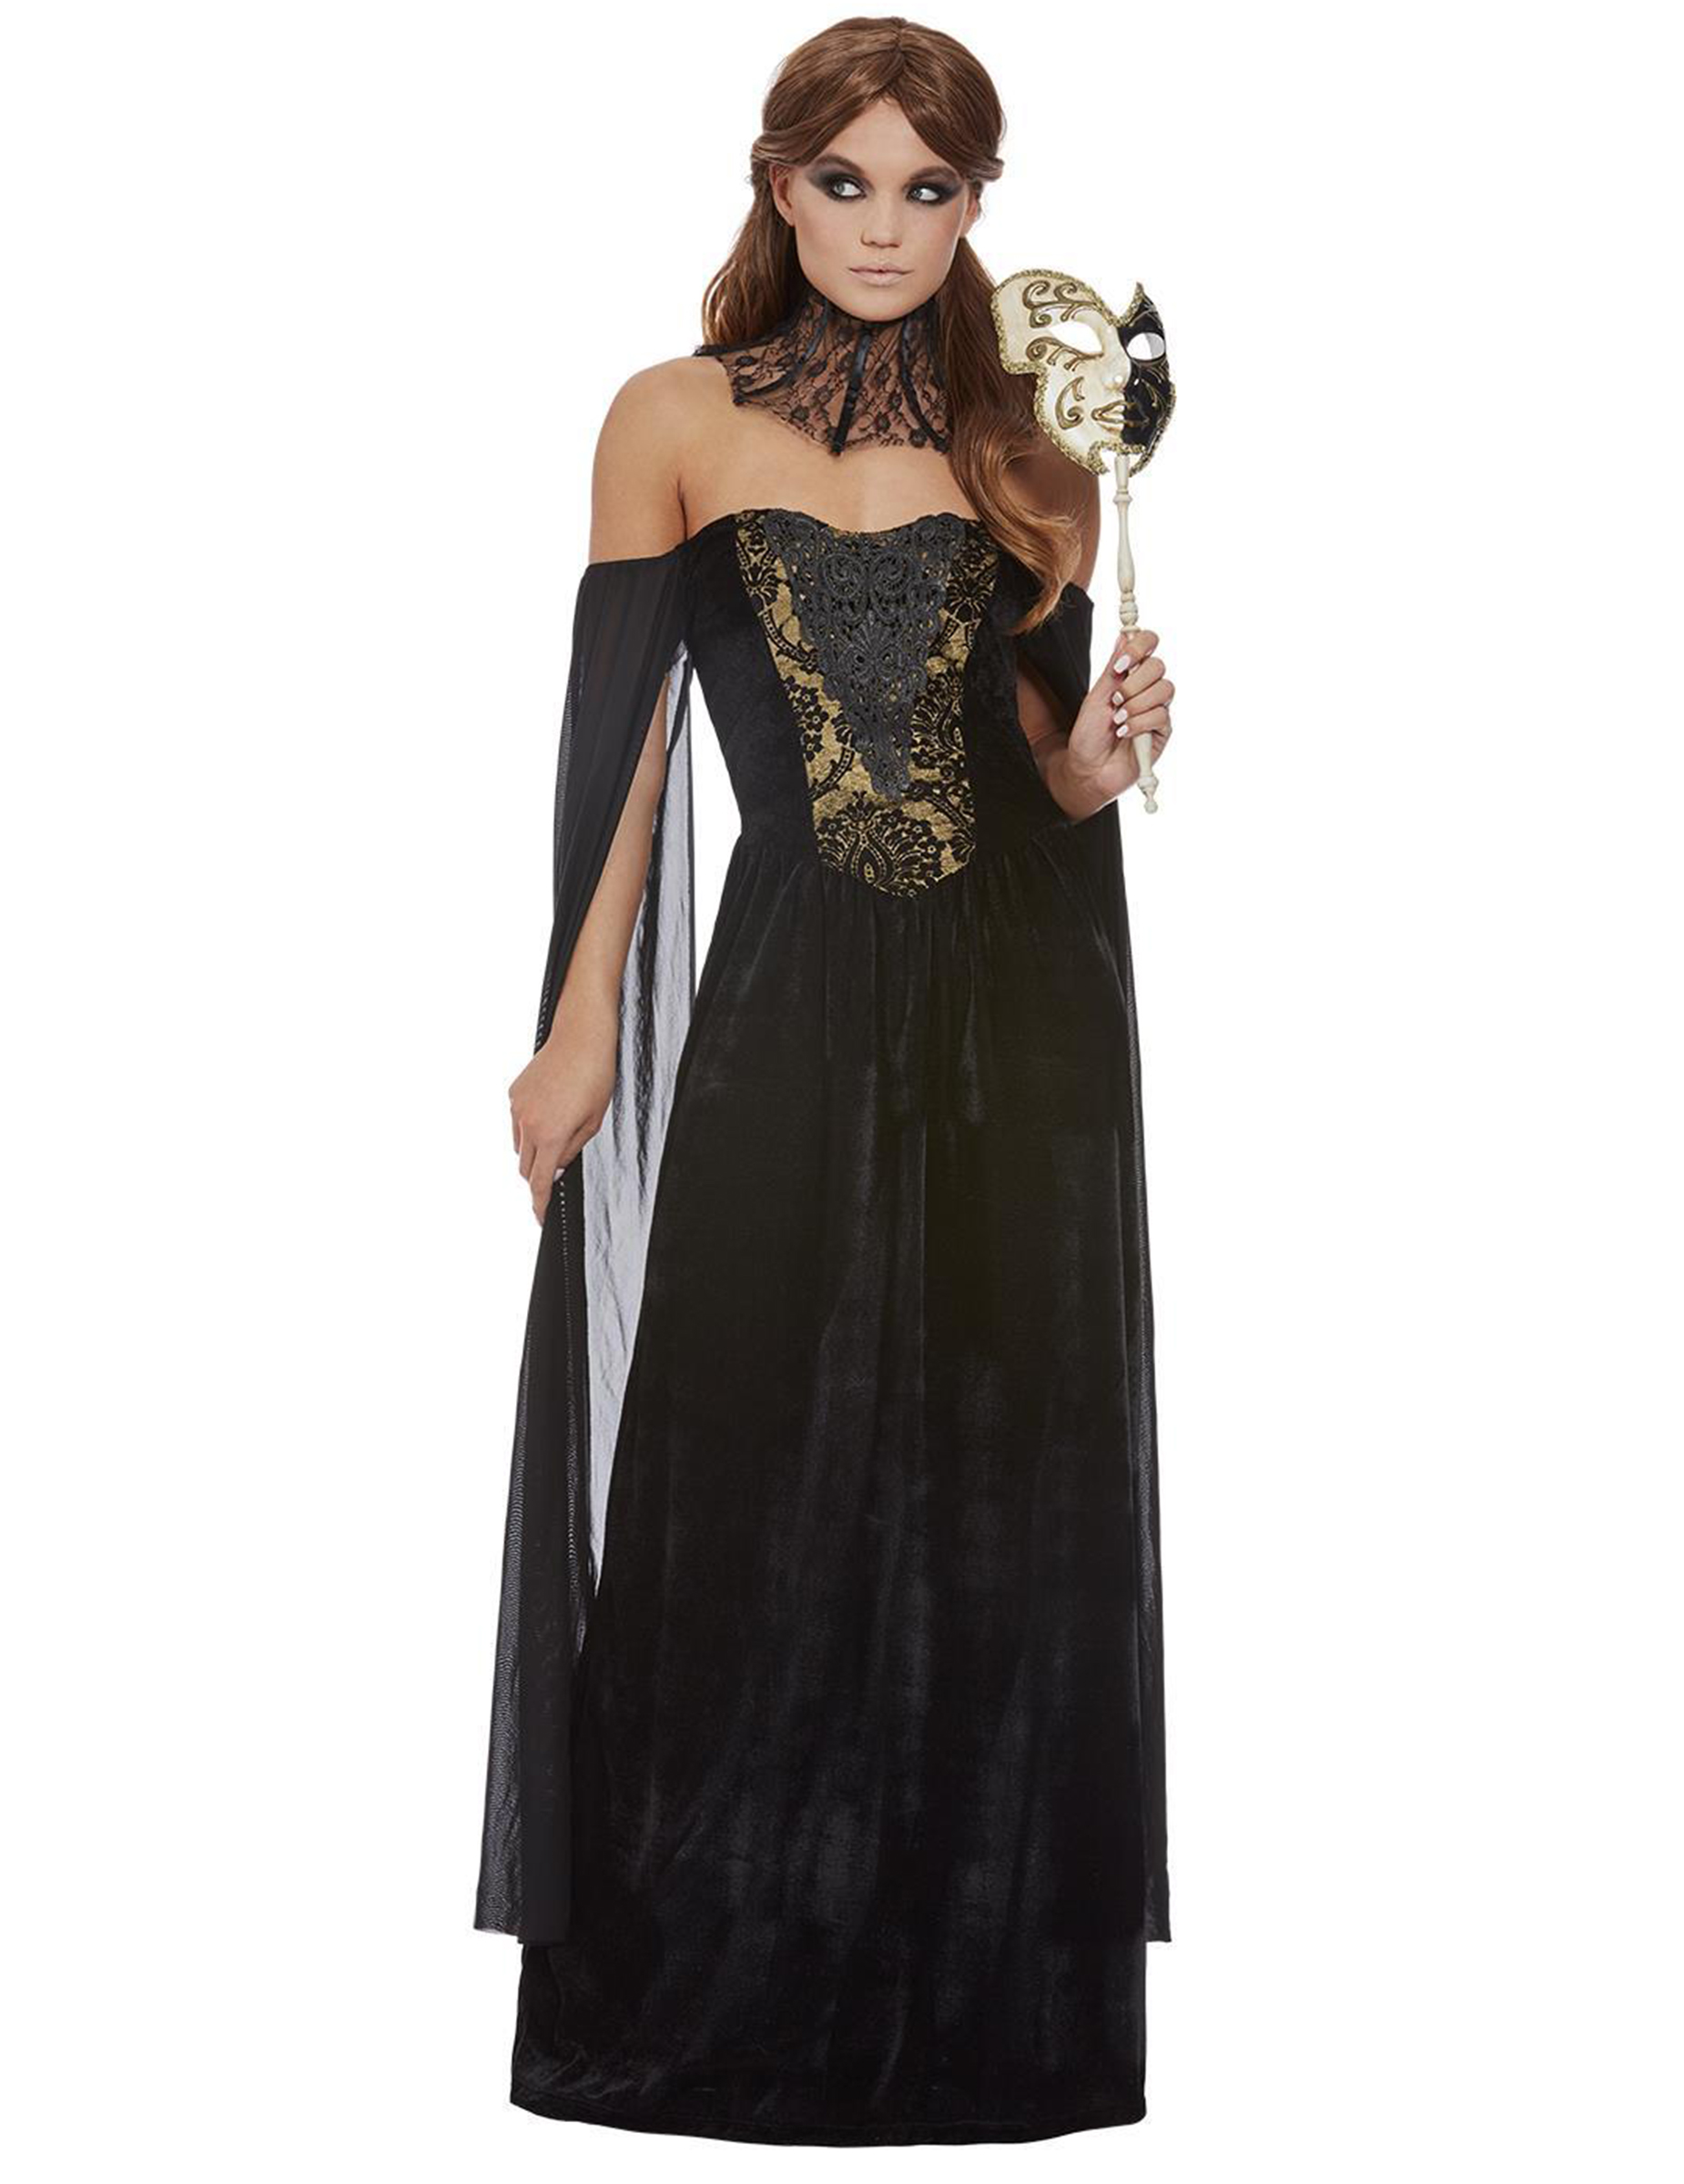 Gräfin-Gothic-Kostüm für Damen Halloween-Kostüm schwarz-gold von SMIFFY'S